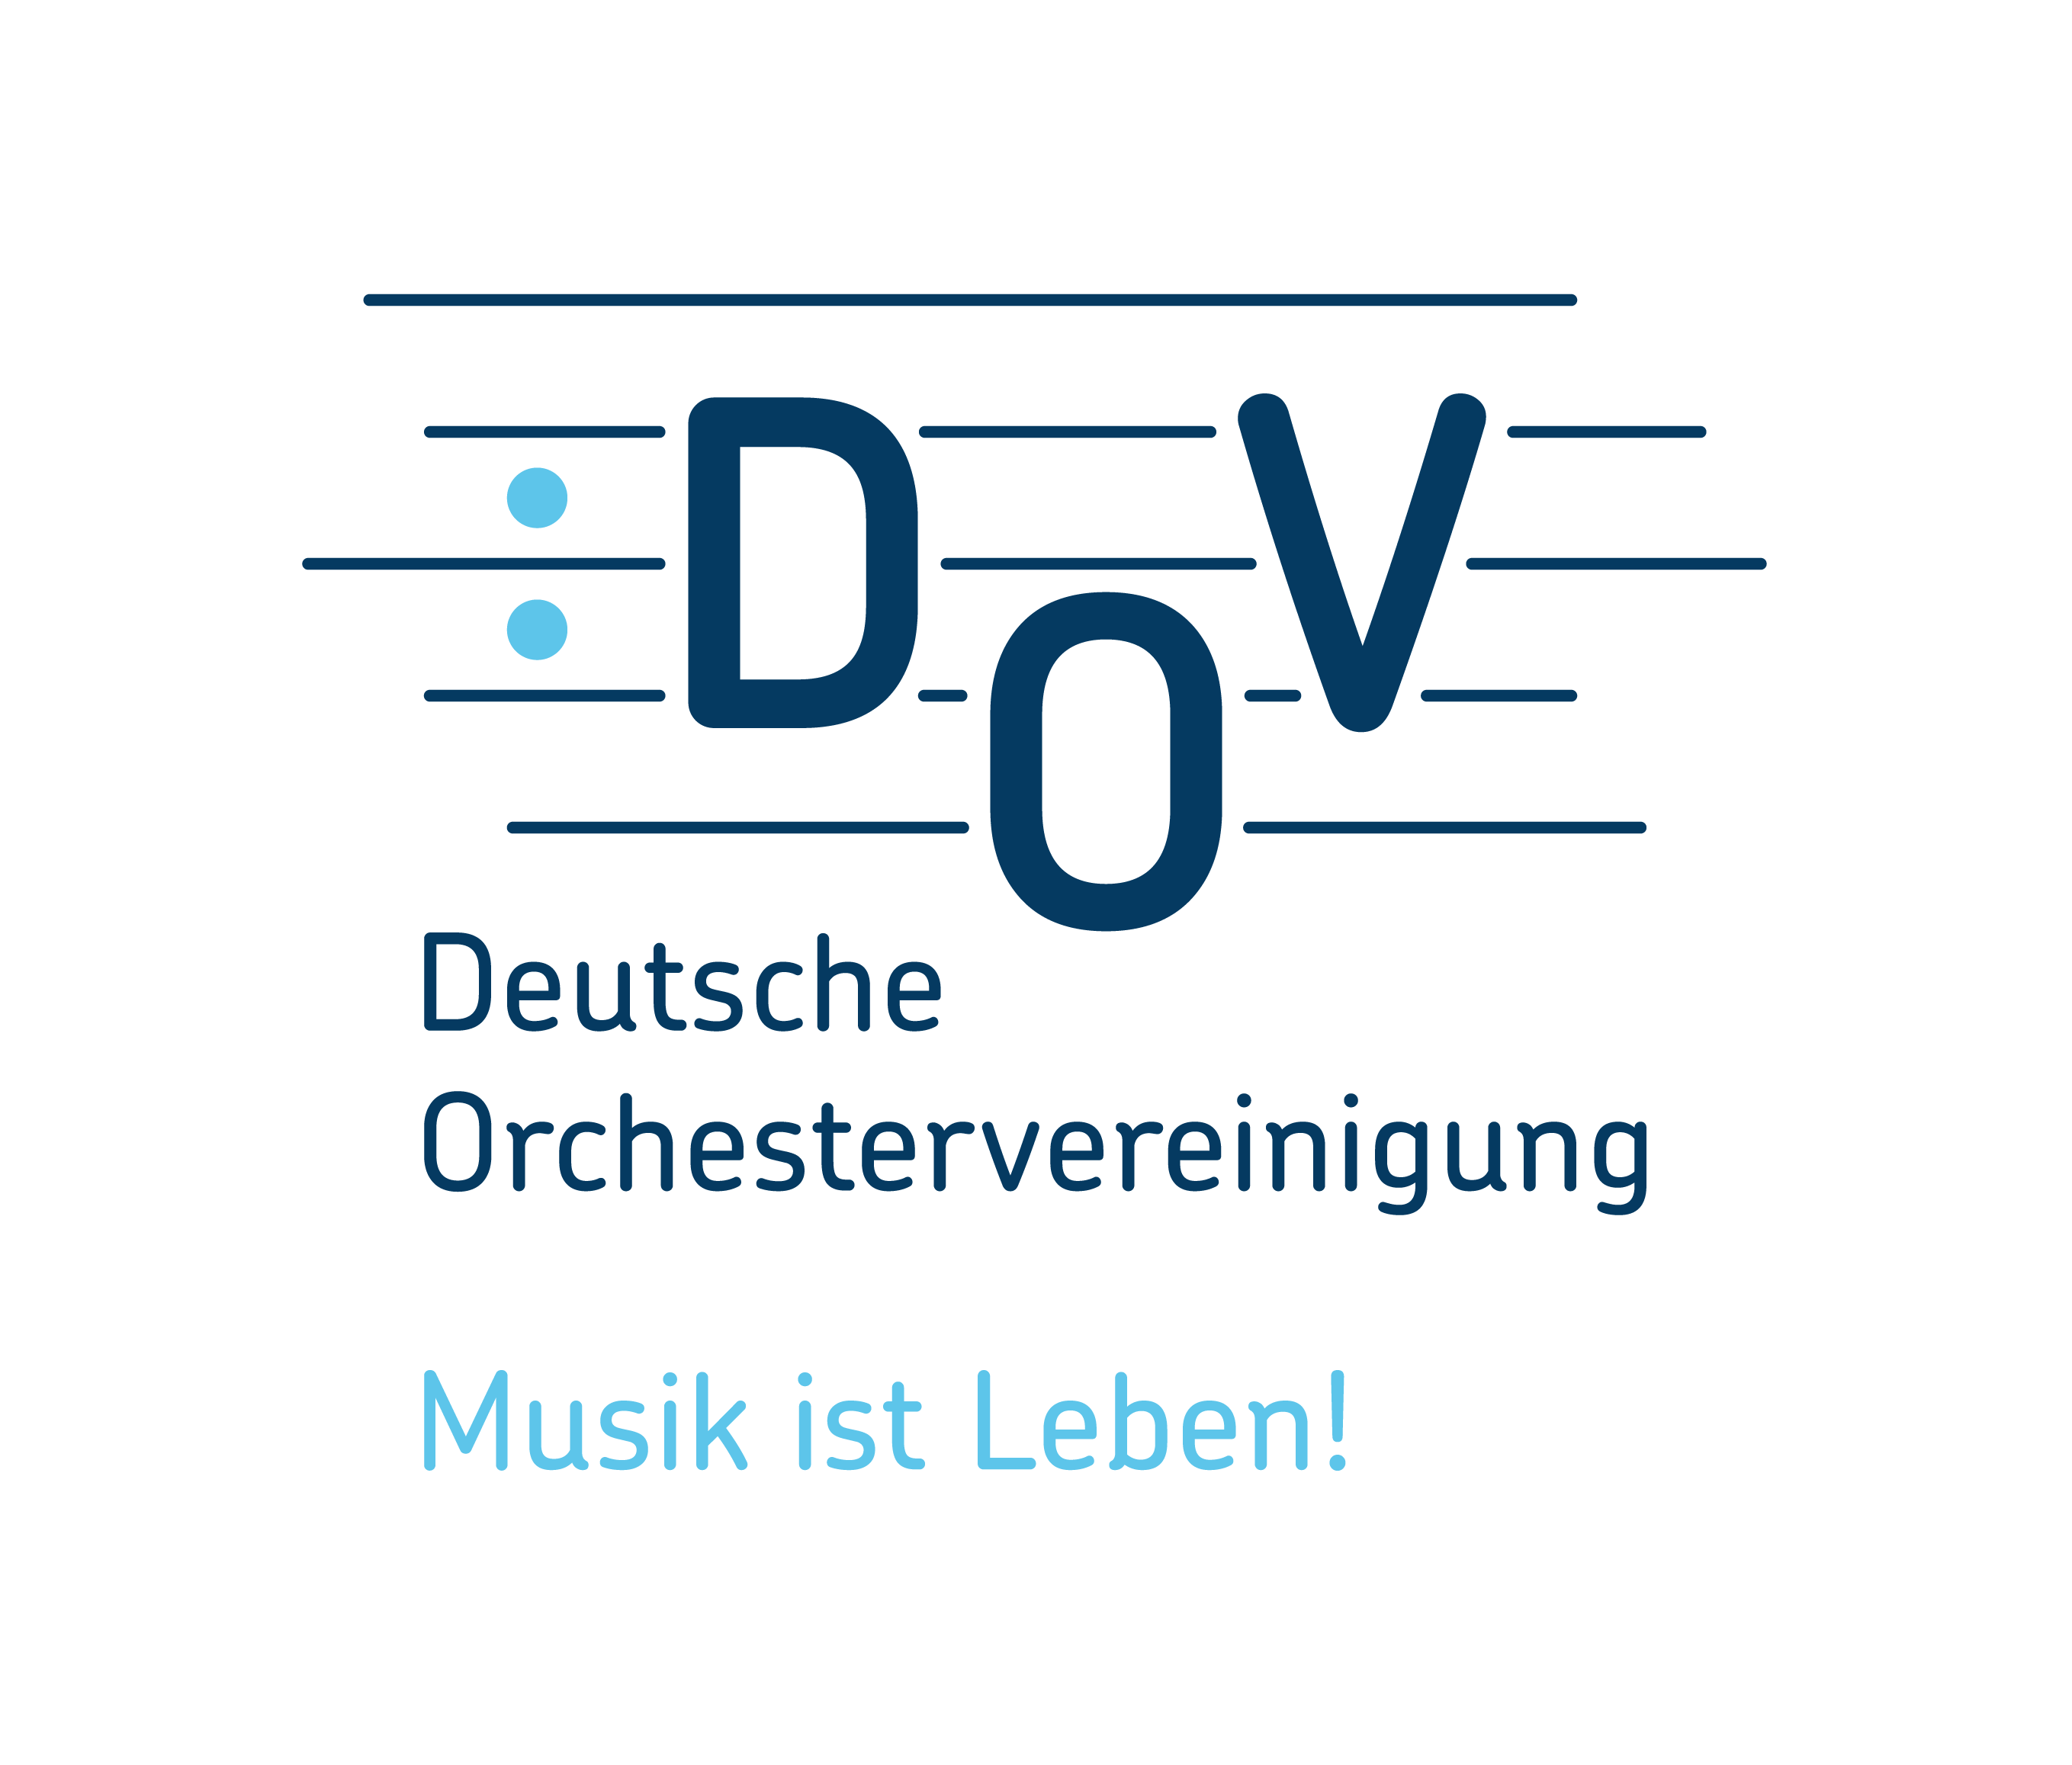 Deutsche Orchestervereinigung (DOV)